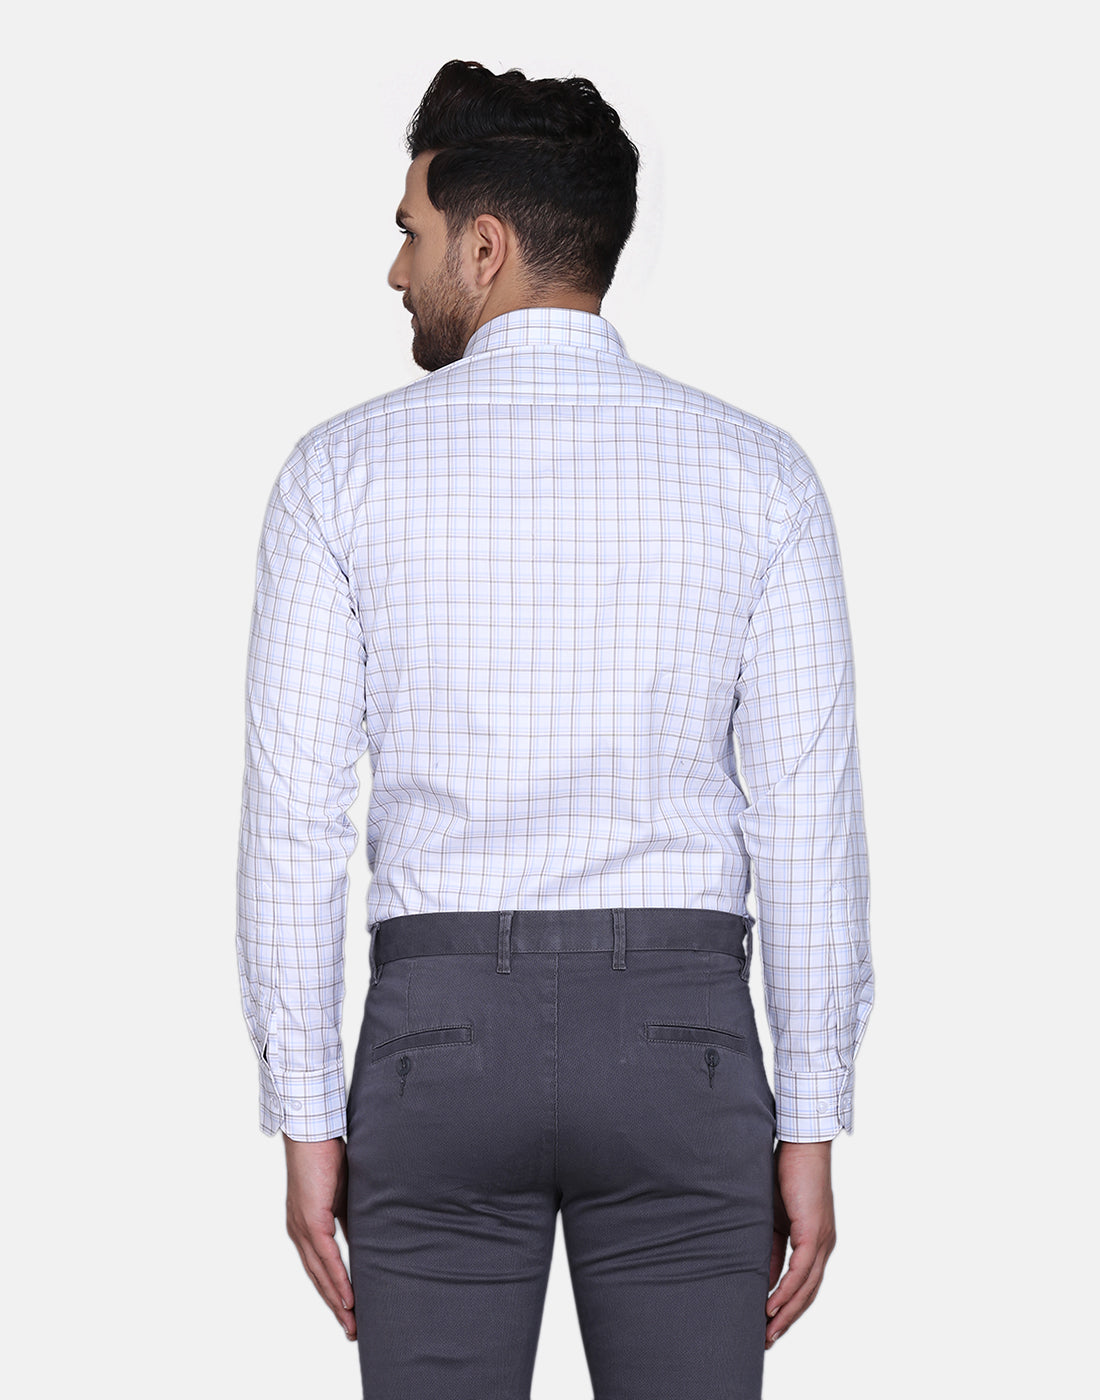 Herringbone checkered formal shirt